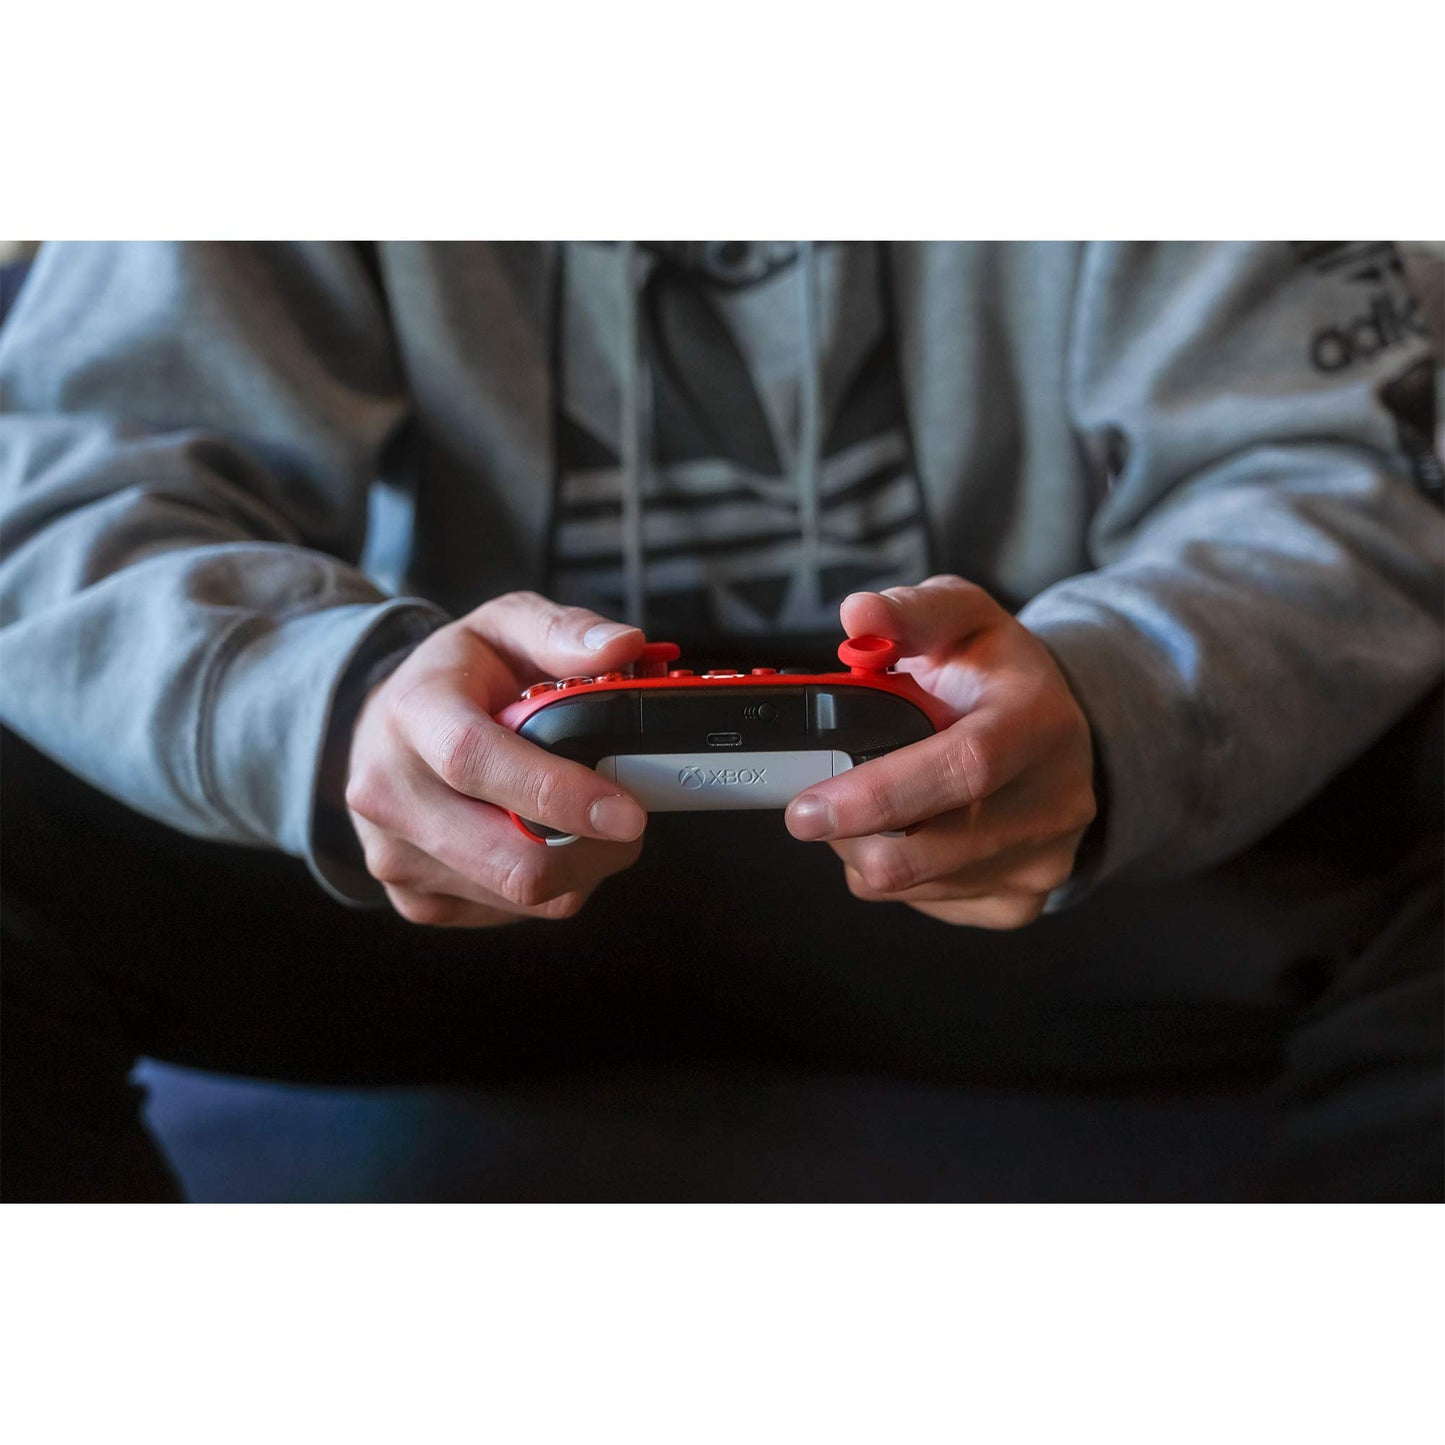 Xbox Kablosuz Oyun Kumandası (Gen9) Kırmızı